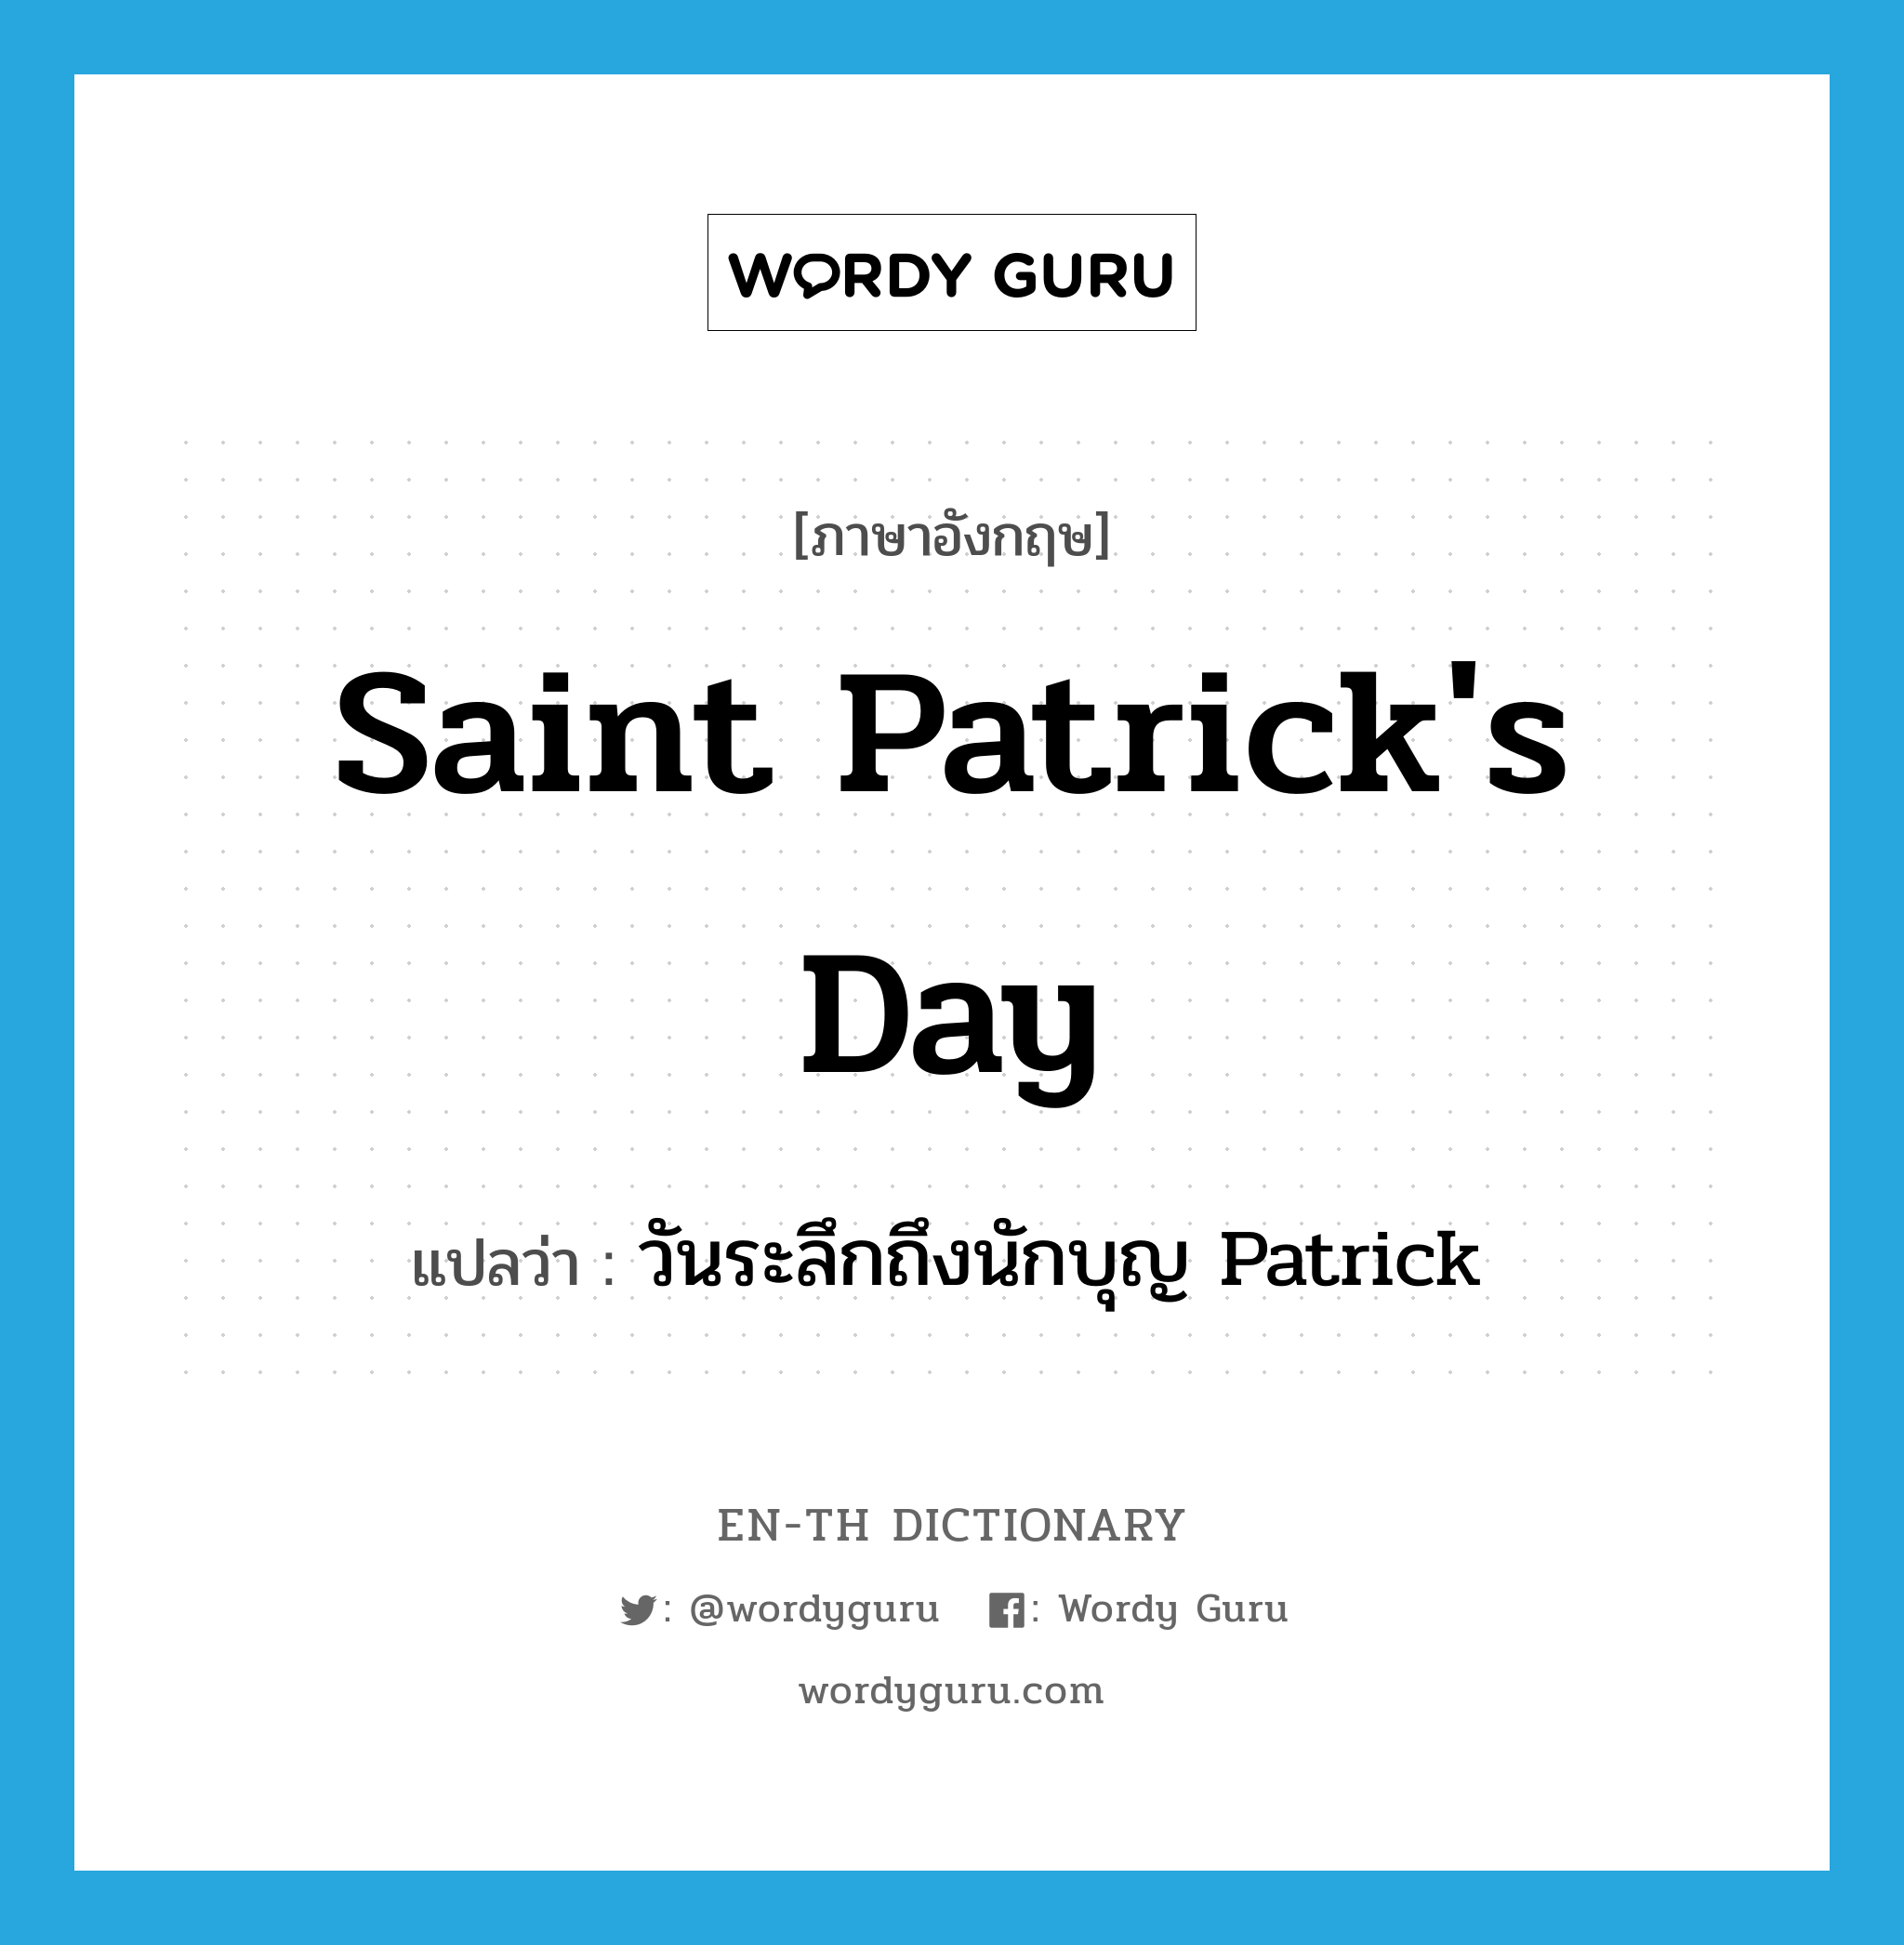 วันระลึกถึงนักบุญ Patrick ภาษาอังกฤษ?, คำศัพท์ภาษาอังกฤษ วันระลึกถึงนักบุญ Patrick แปลว่า Saint Patrick's Day ประเภท N หมวด N